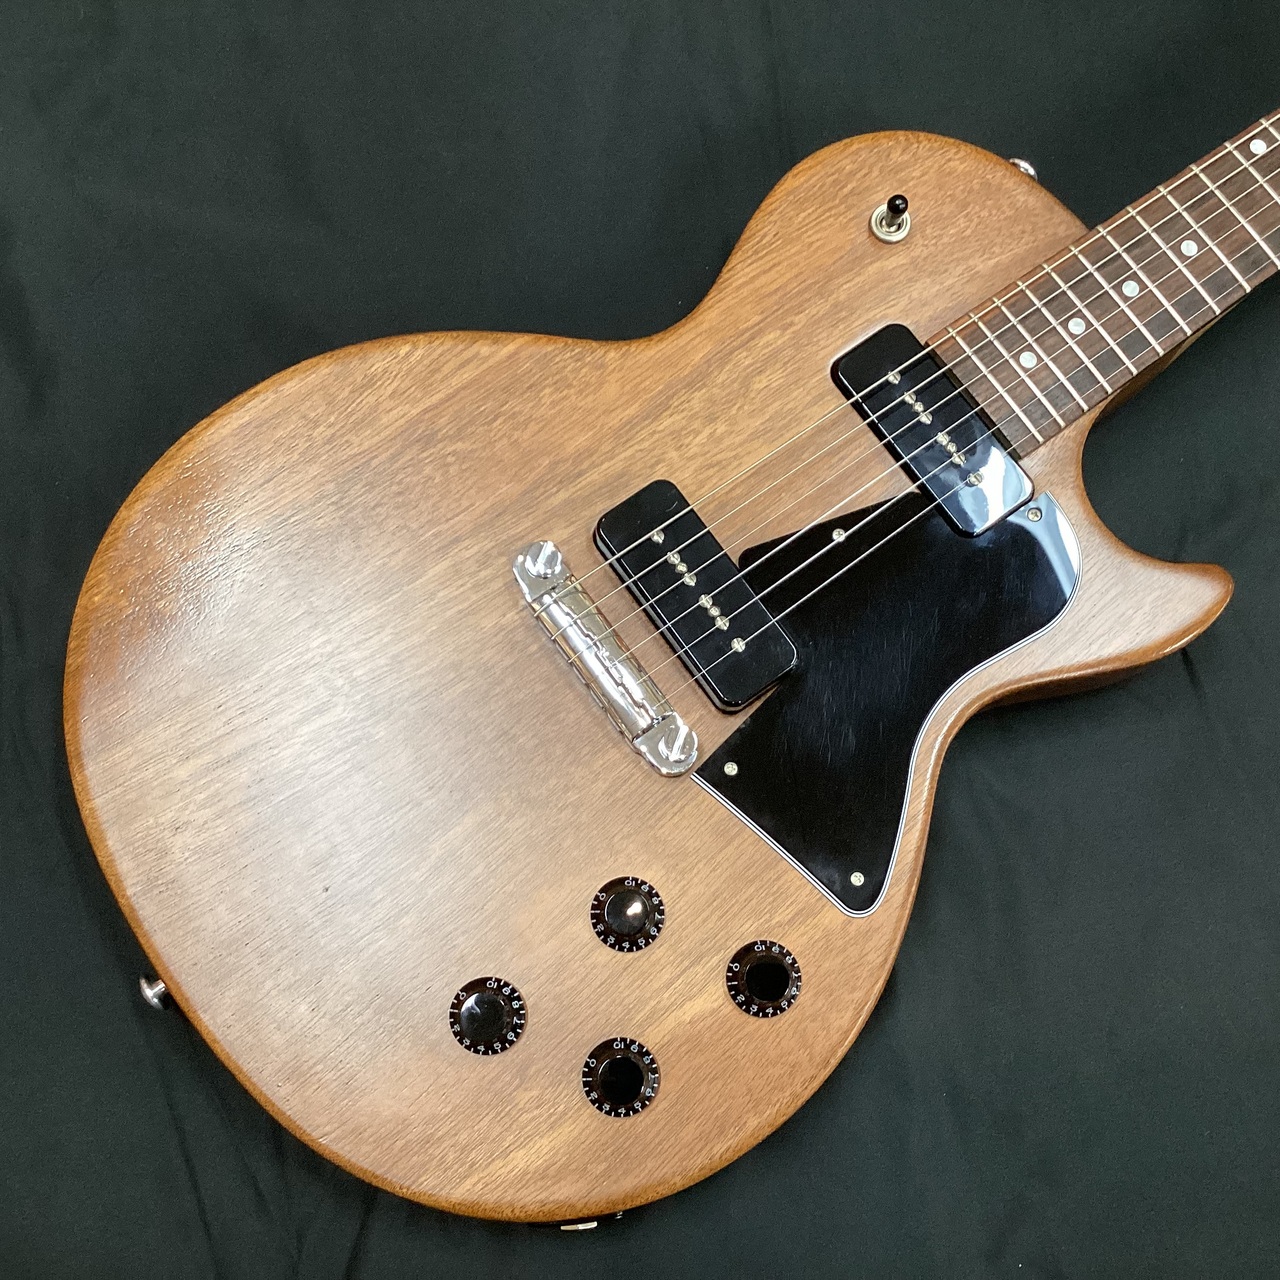 【9月限り出品】Gibson Les Paul Special tribute